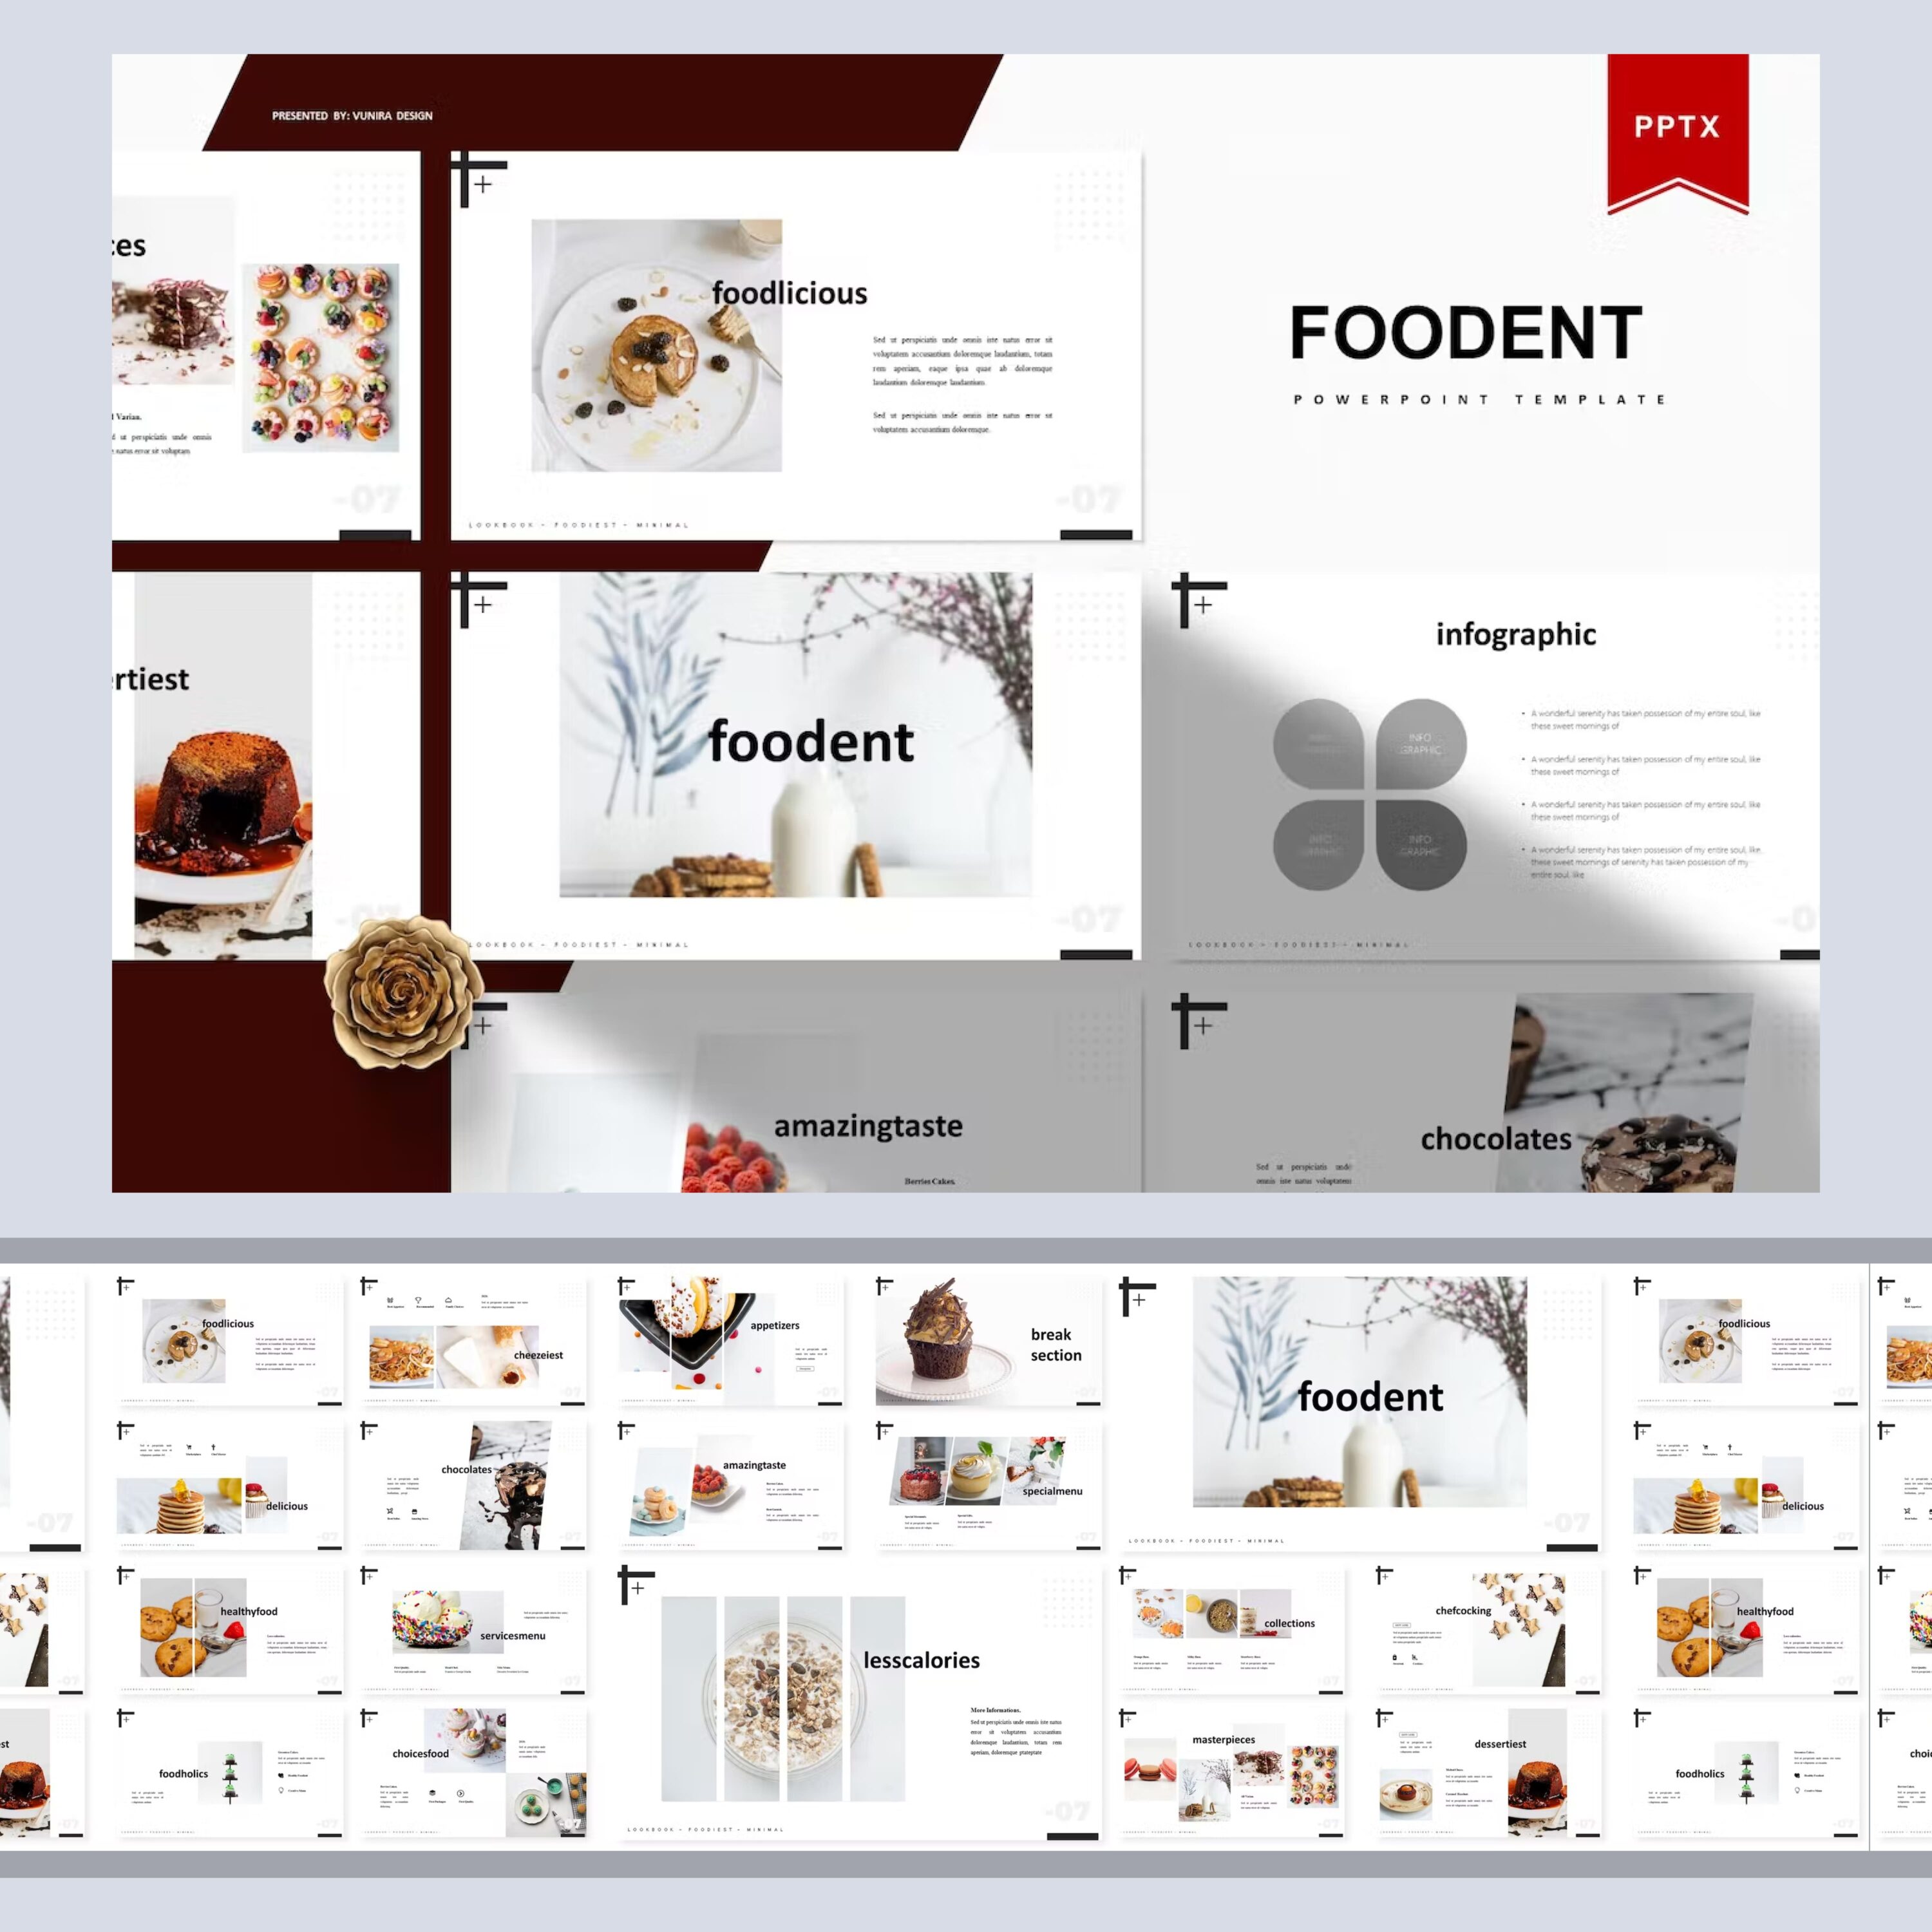 Foodent | Powerpoint Template from Vunira.